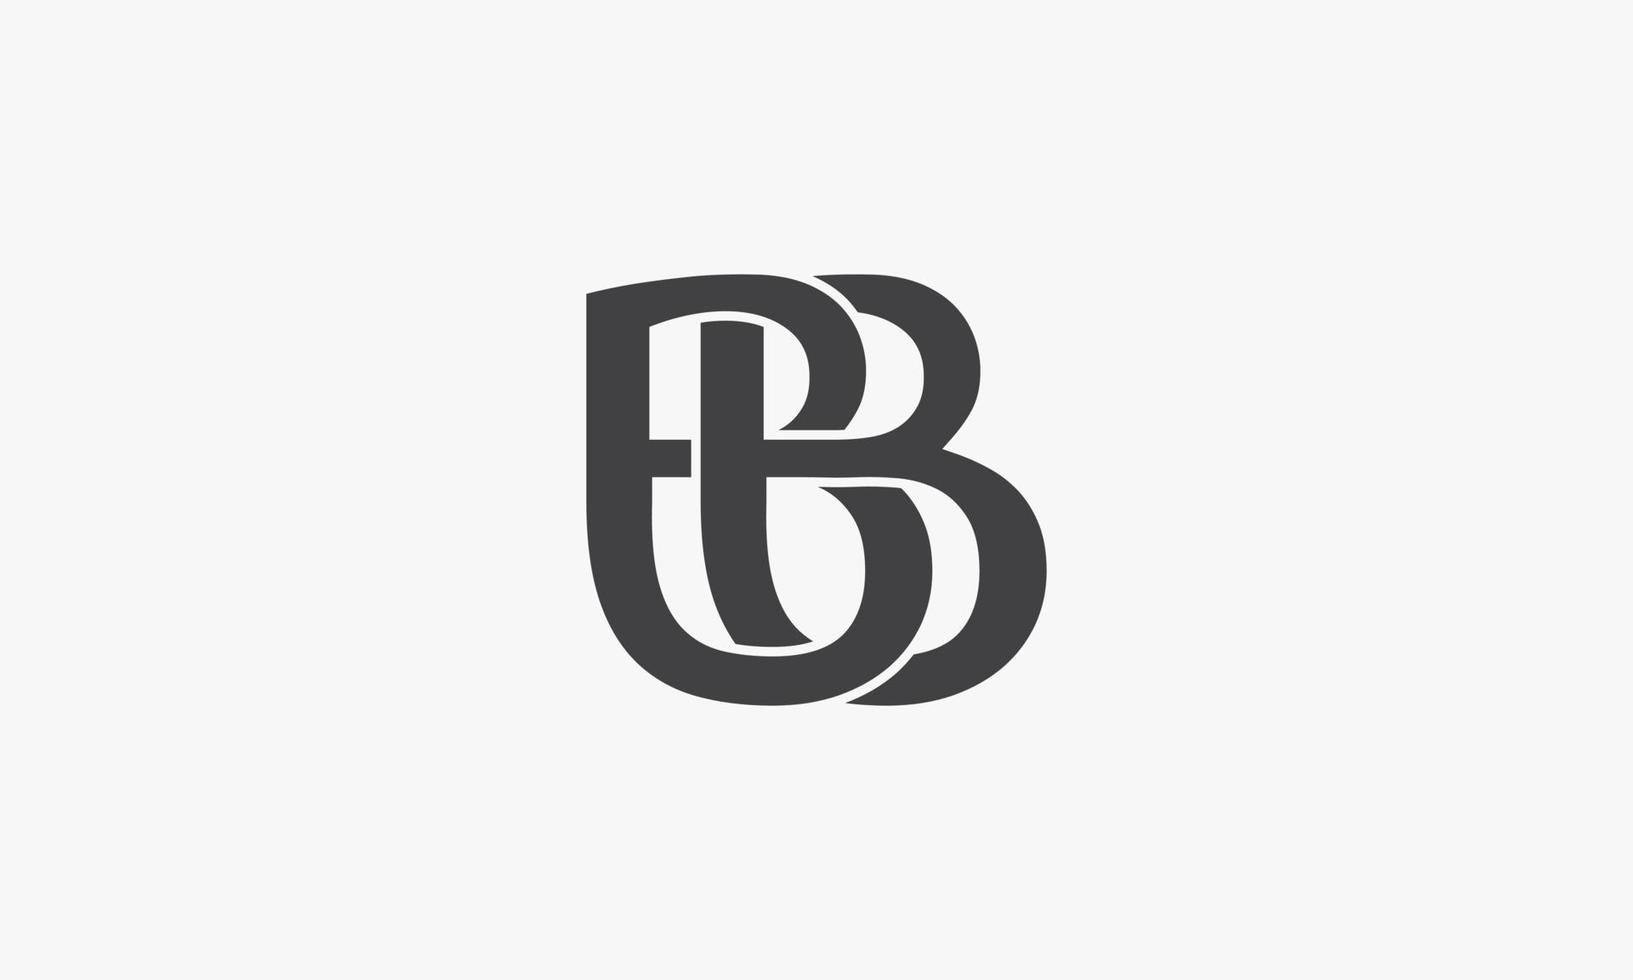 bb lettera vincolante ogni altro concetto di logo isolato su sfondo bianco. vettore